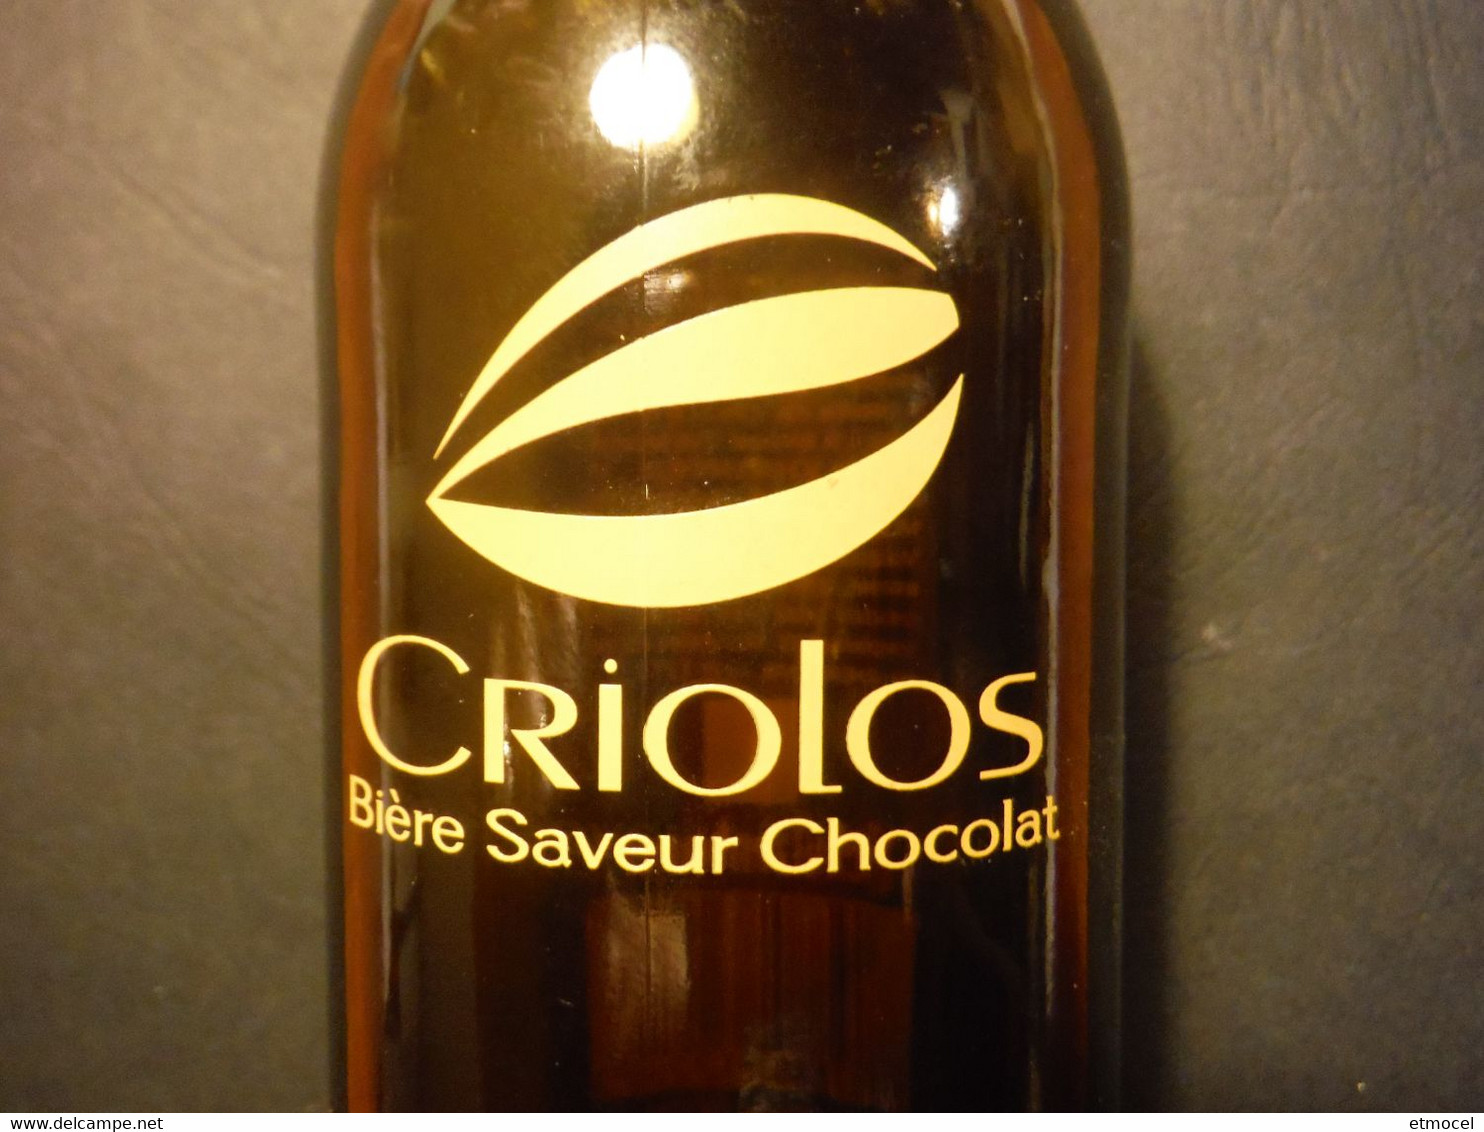 Bouteille Rare De Bière Criolos - Bière Saveur Chocolat - SCHUTZENBERGER - Thierry Mulhaupt - Bier